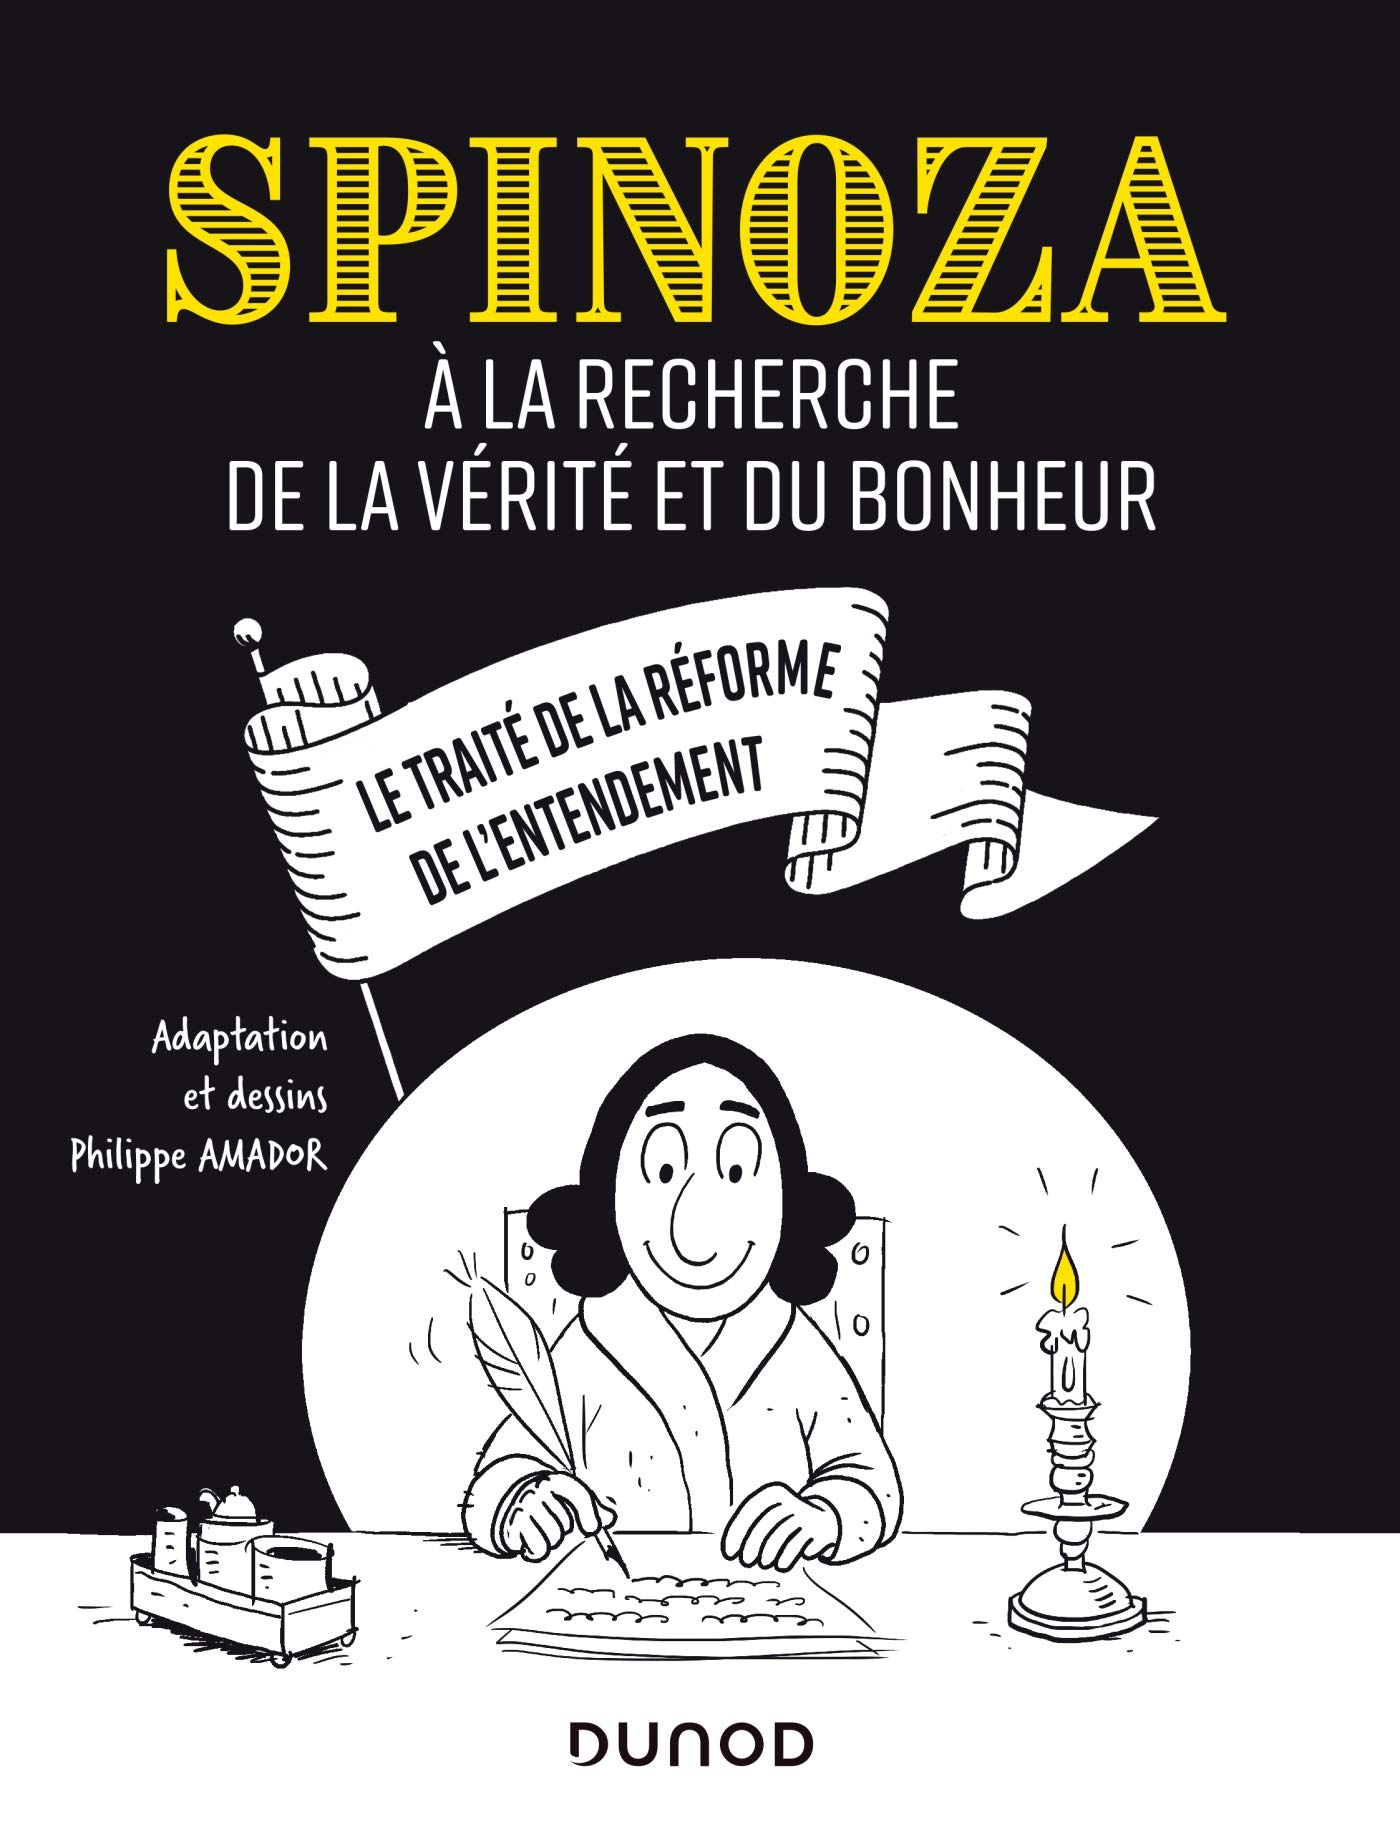 Spinoza: A la recherche de la verite et du bonheur